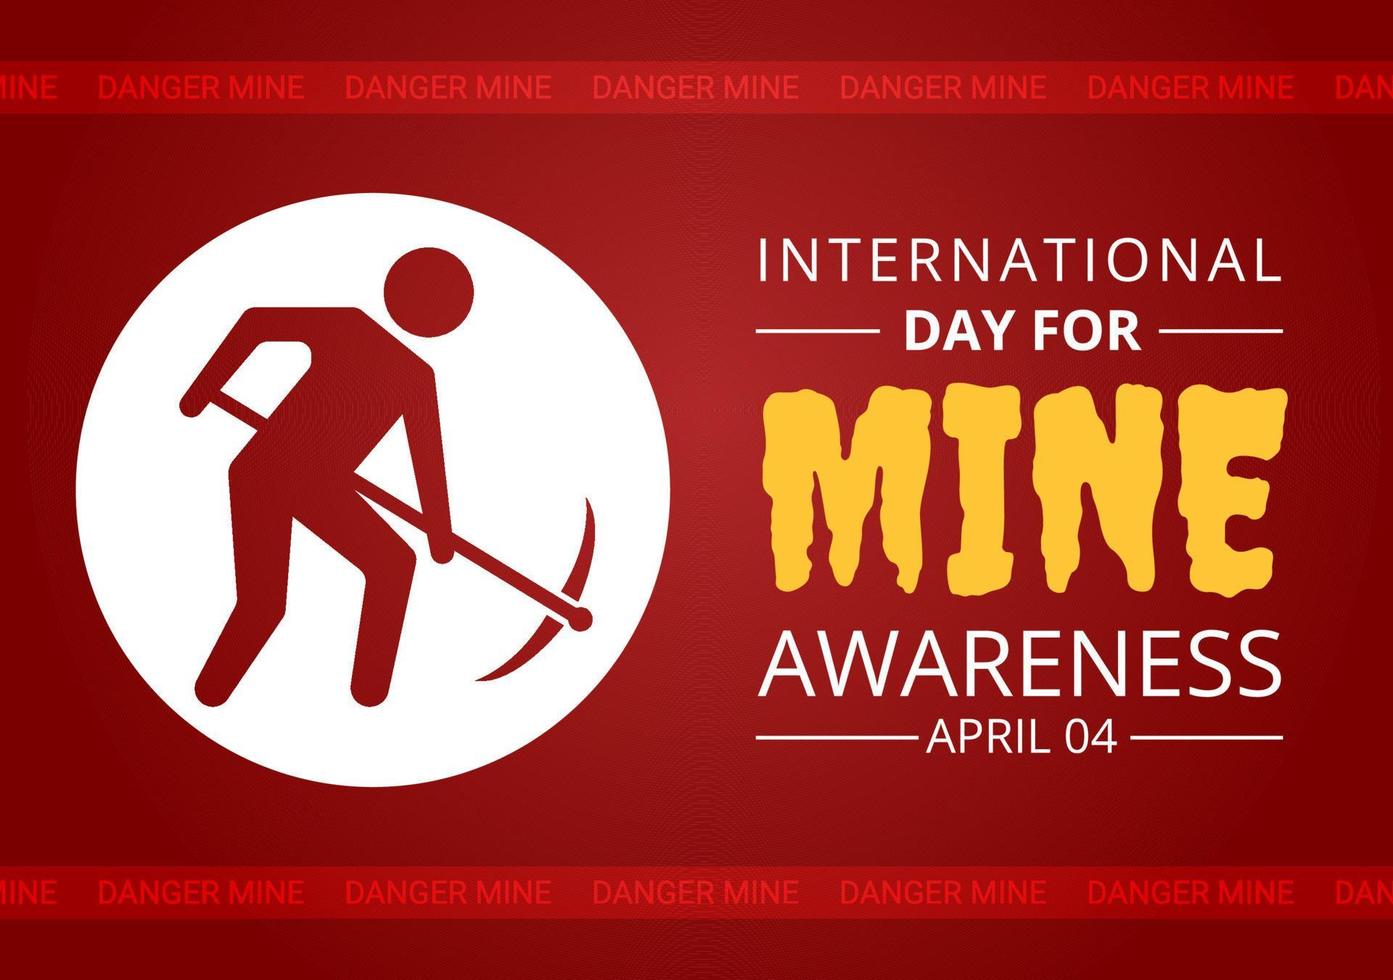 journée internationale de sensibilisation aux mines le 04 avril illustration avec ne pas marcher sur les mines terrestres pour la bannière web dans des modèles dessinés à la main de dessin animé plat vecteur